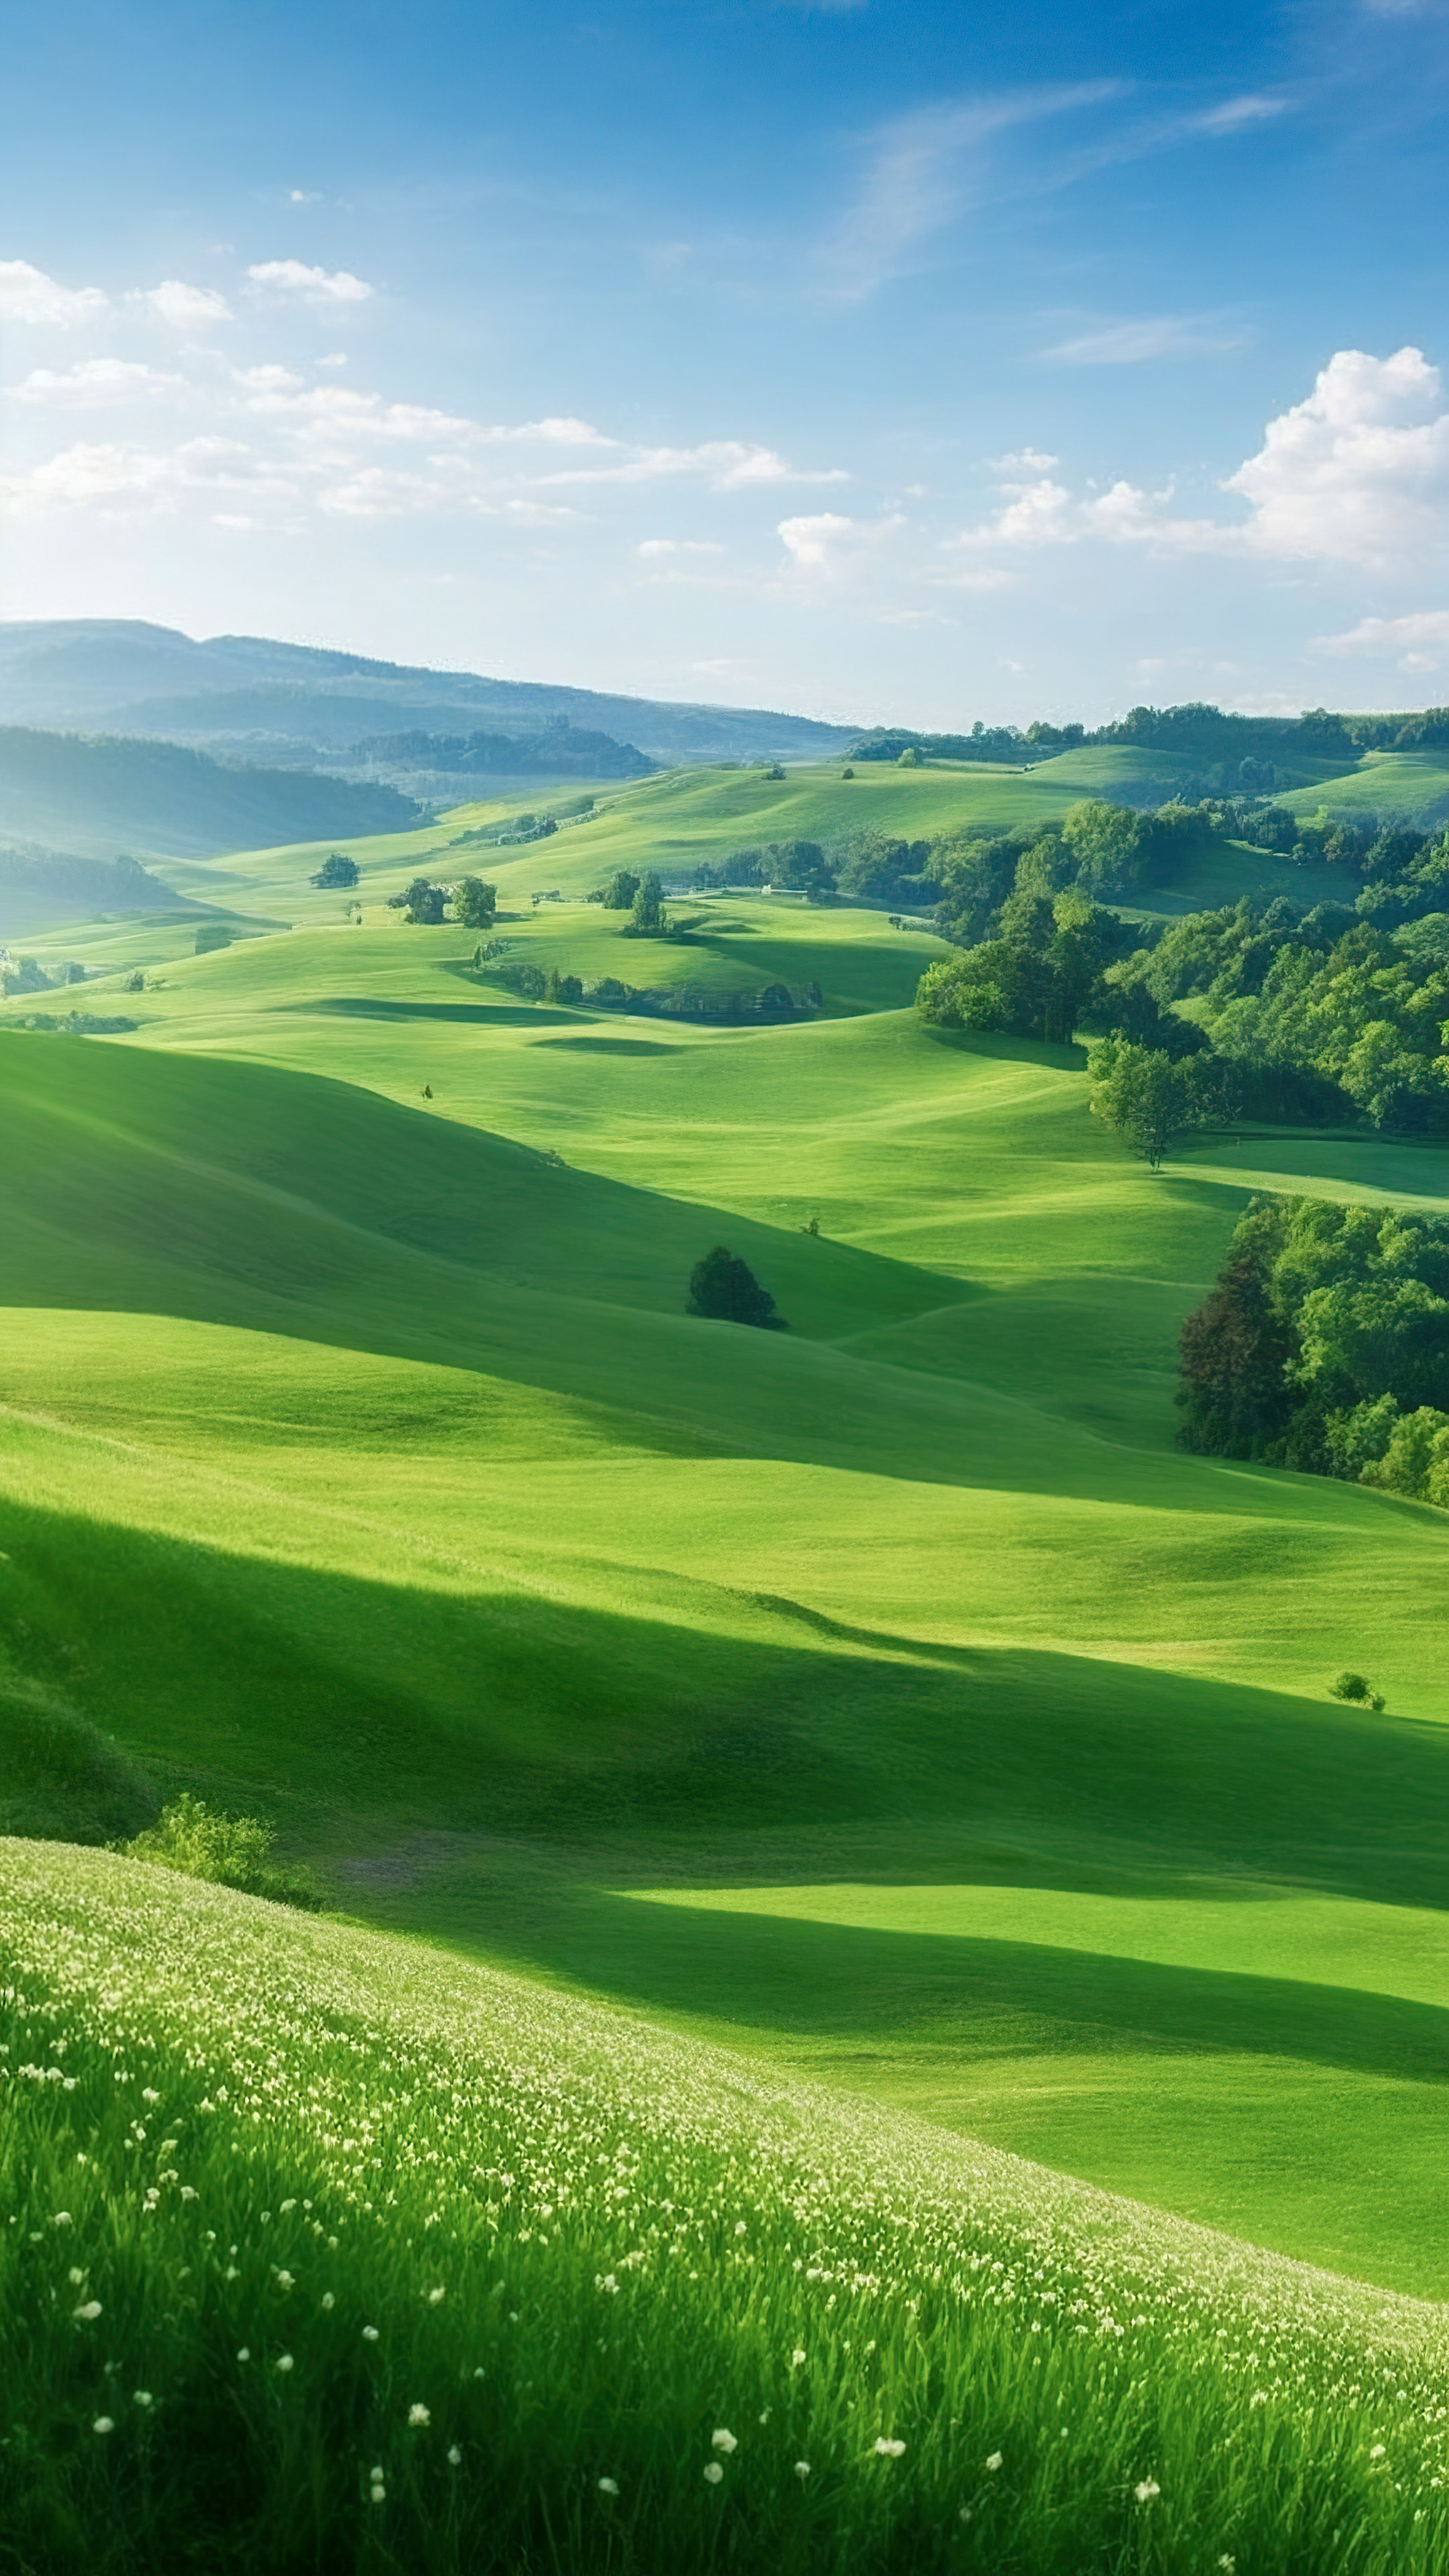 Vivez la tranquillité avec notre joli fond d'écran de paysage, dépeignant une scène paisible de campagne avec des collines ondulantes, des pâturages verts et un ciel clair.